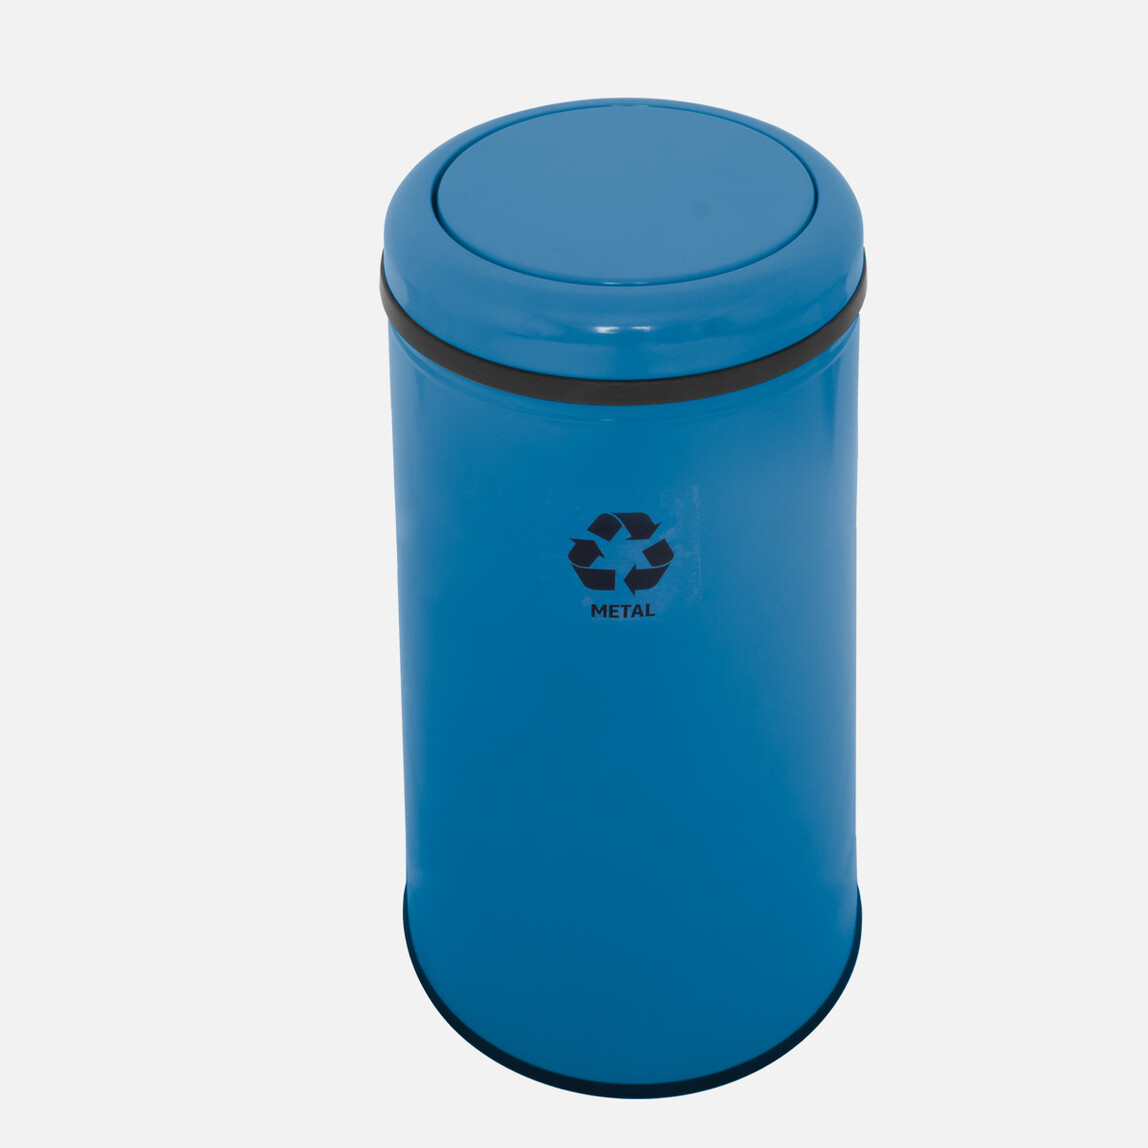    Efor Metal Atık Çöp Kovası (Mavi)  